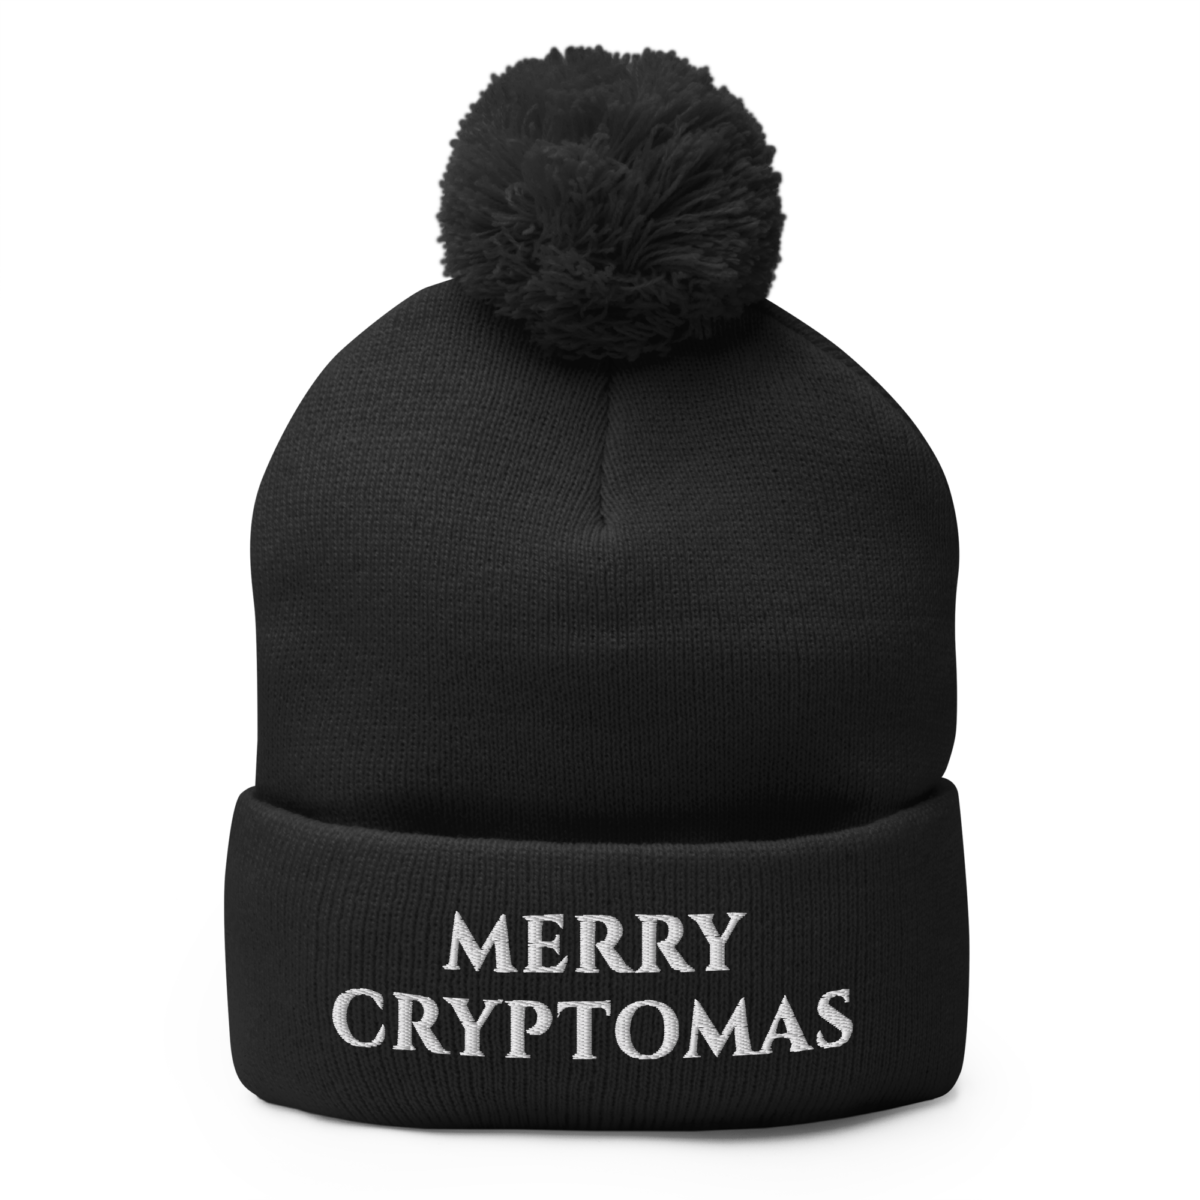 pom pom knit cap black front 638a6378a1e67 - Merry Cryptomas Pom-Pom Beanie